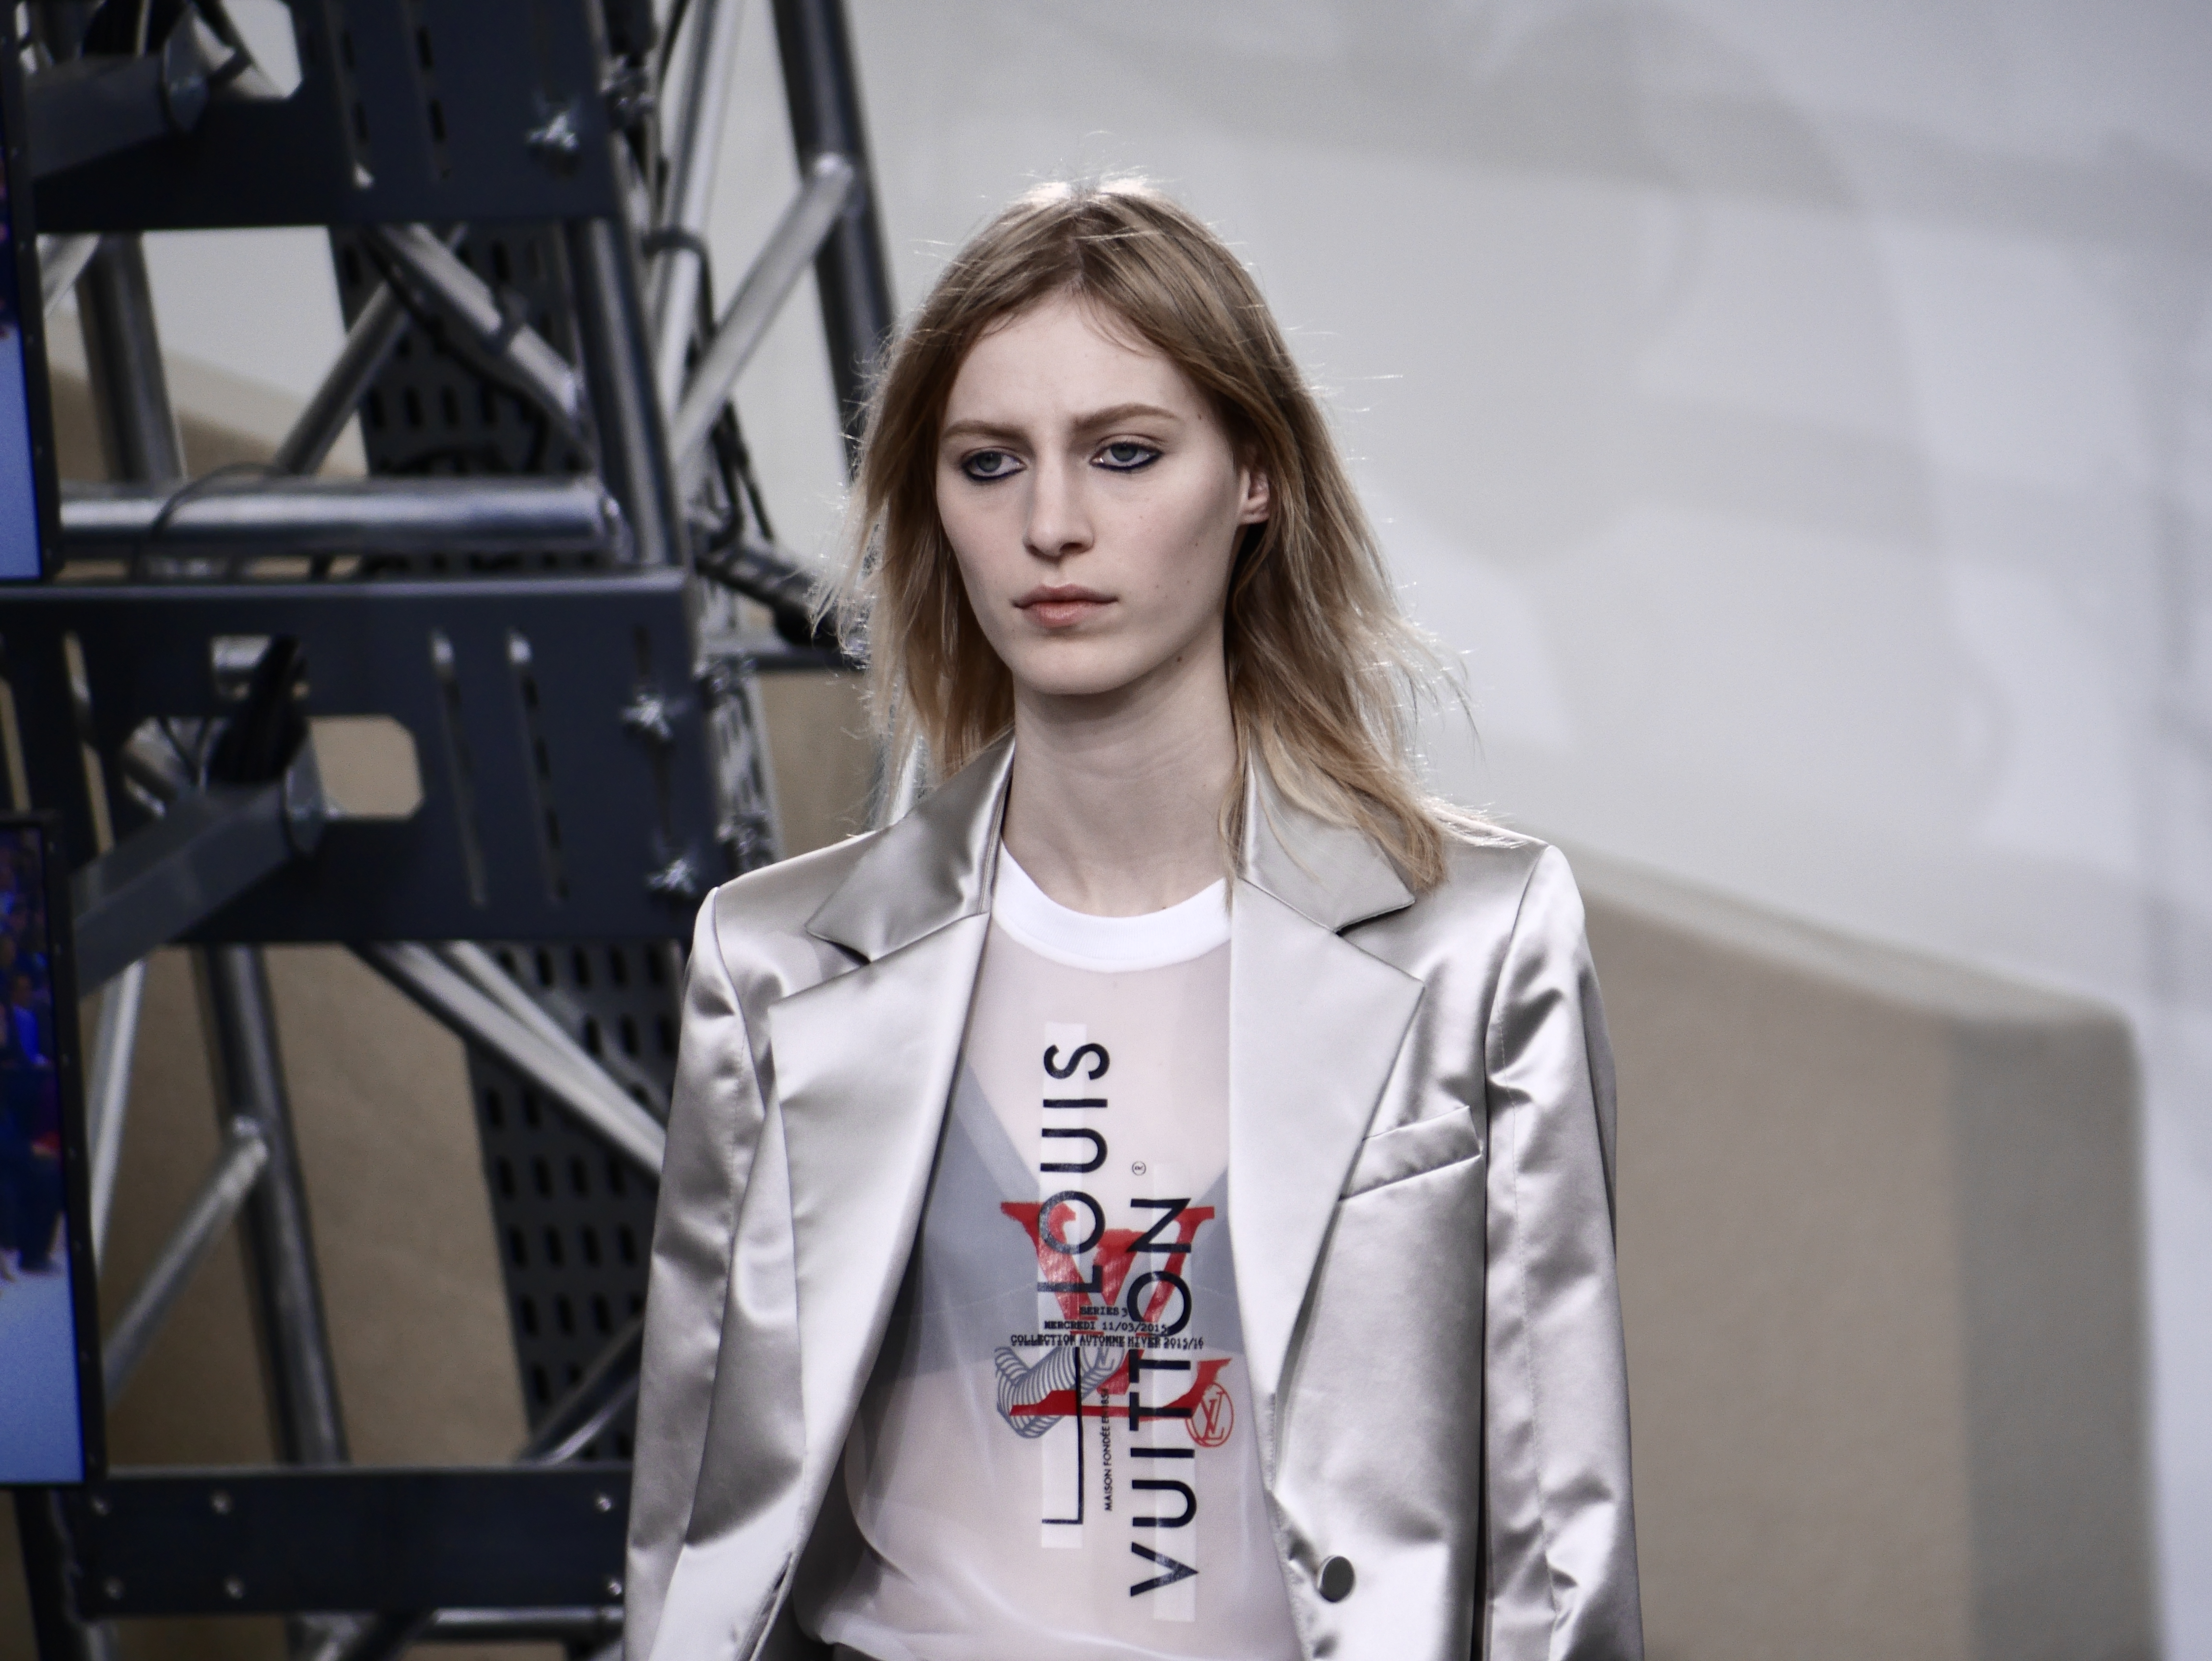 Paris Fashion Week Highlights // Louis Vuitton FW15